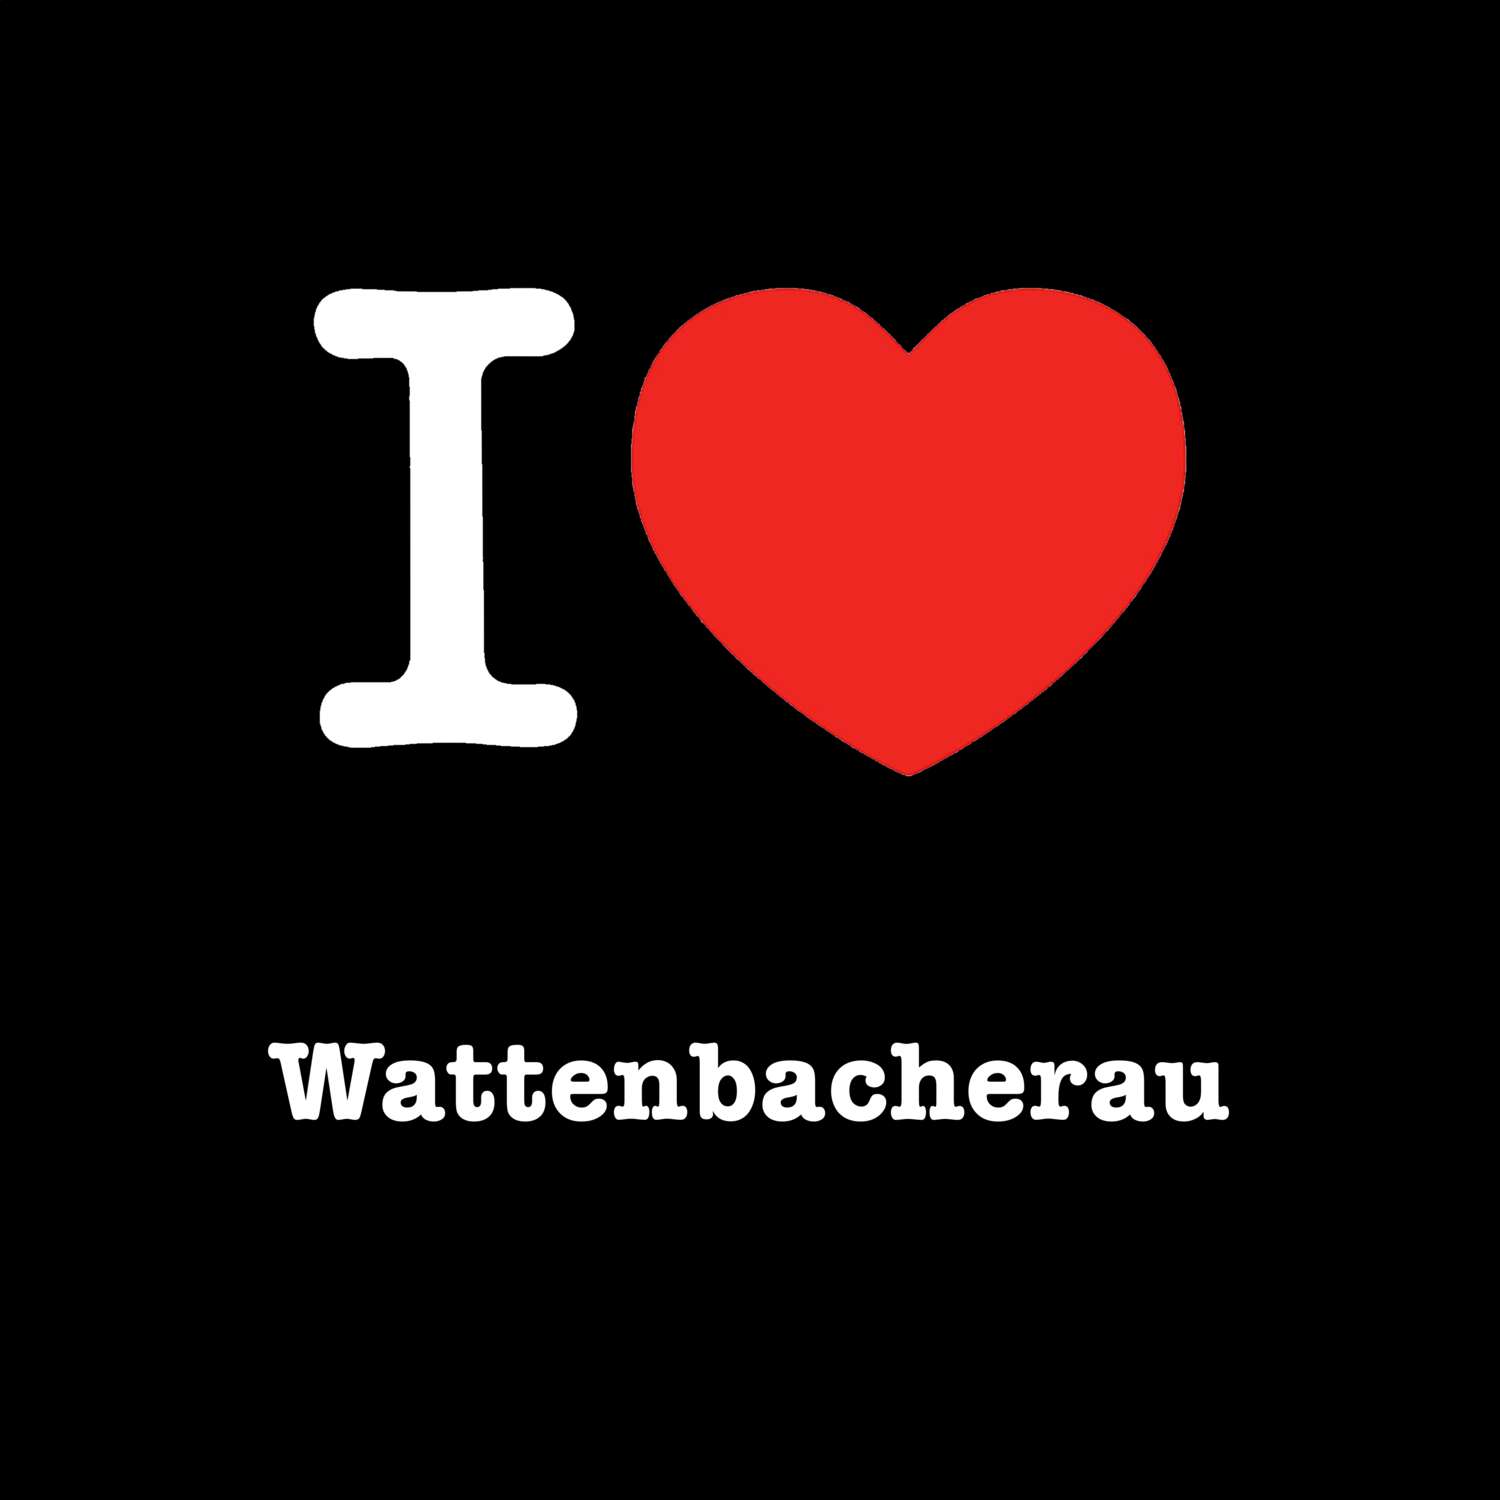 Wattenbacherau T-Shirt »I love«